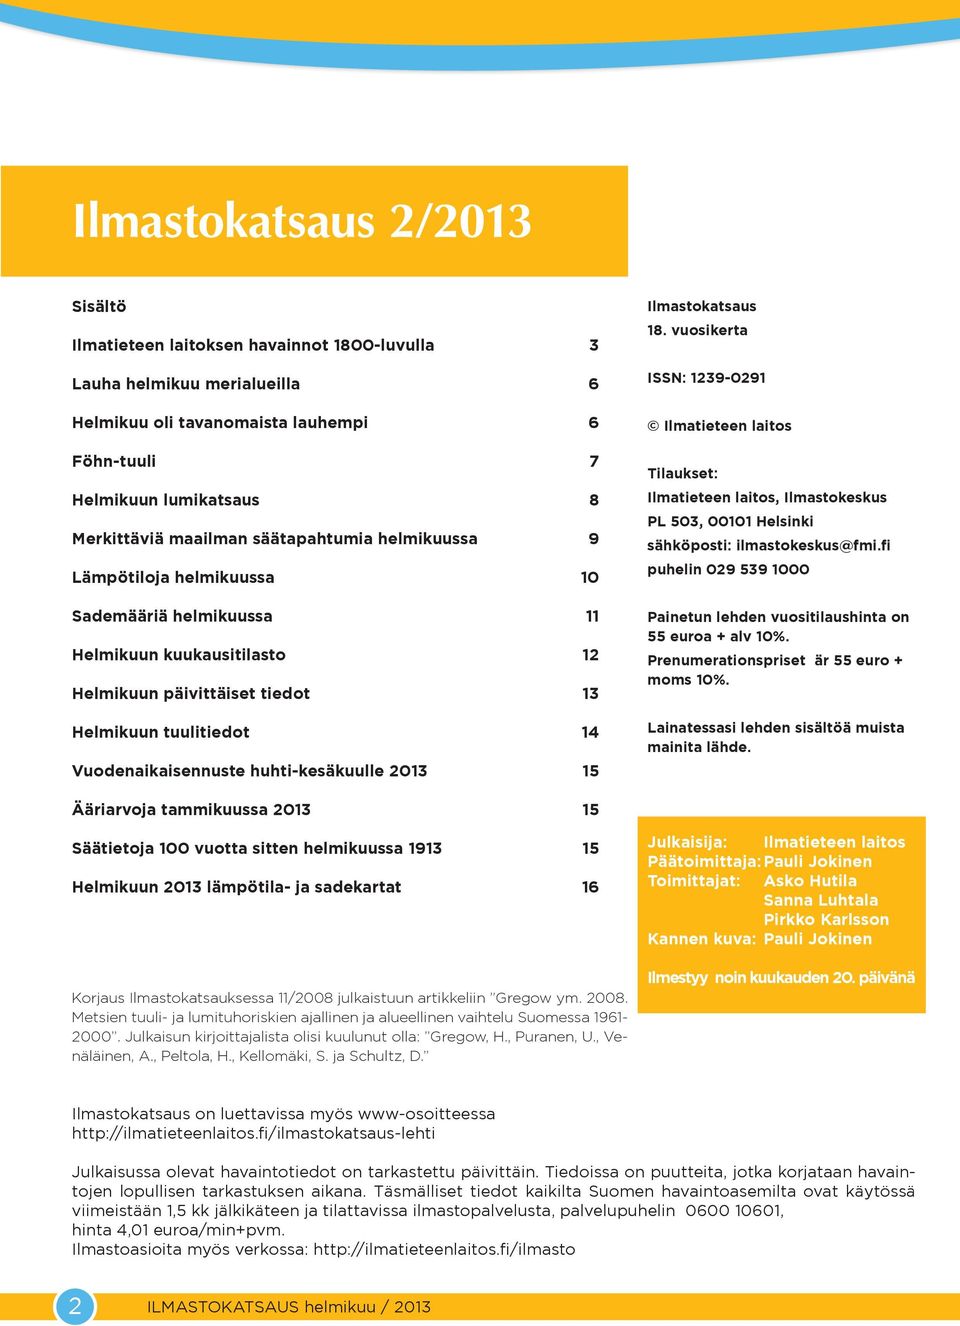 huhti-kesäkuulle 13 Ilmastokatsaus 18. vuosikerta ISSN: 1239-291 Ilmatieteen laitos Tilaukset: Ilmatieteen laitos, Ilmastokeskus PL 53, 1 Helsinki sähköposti: ilmastokeskus@fmi.